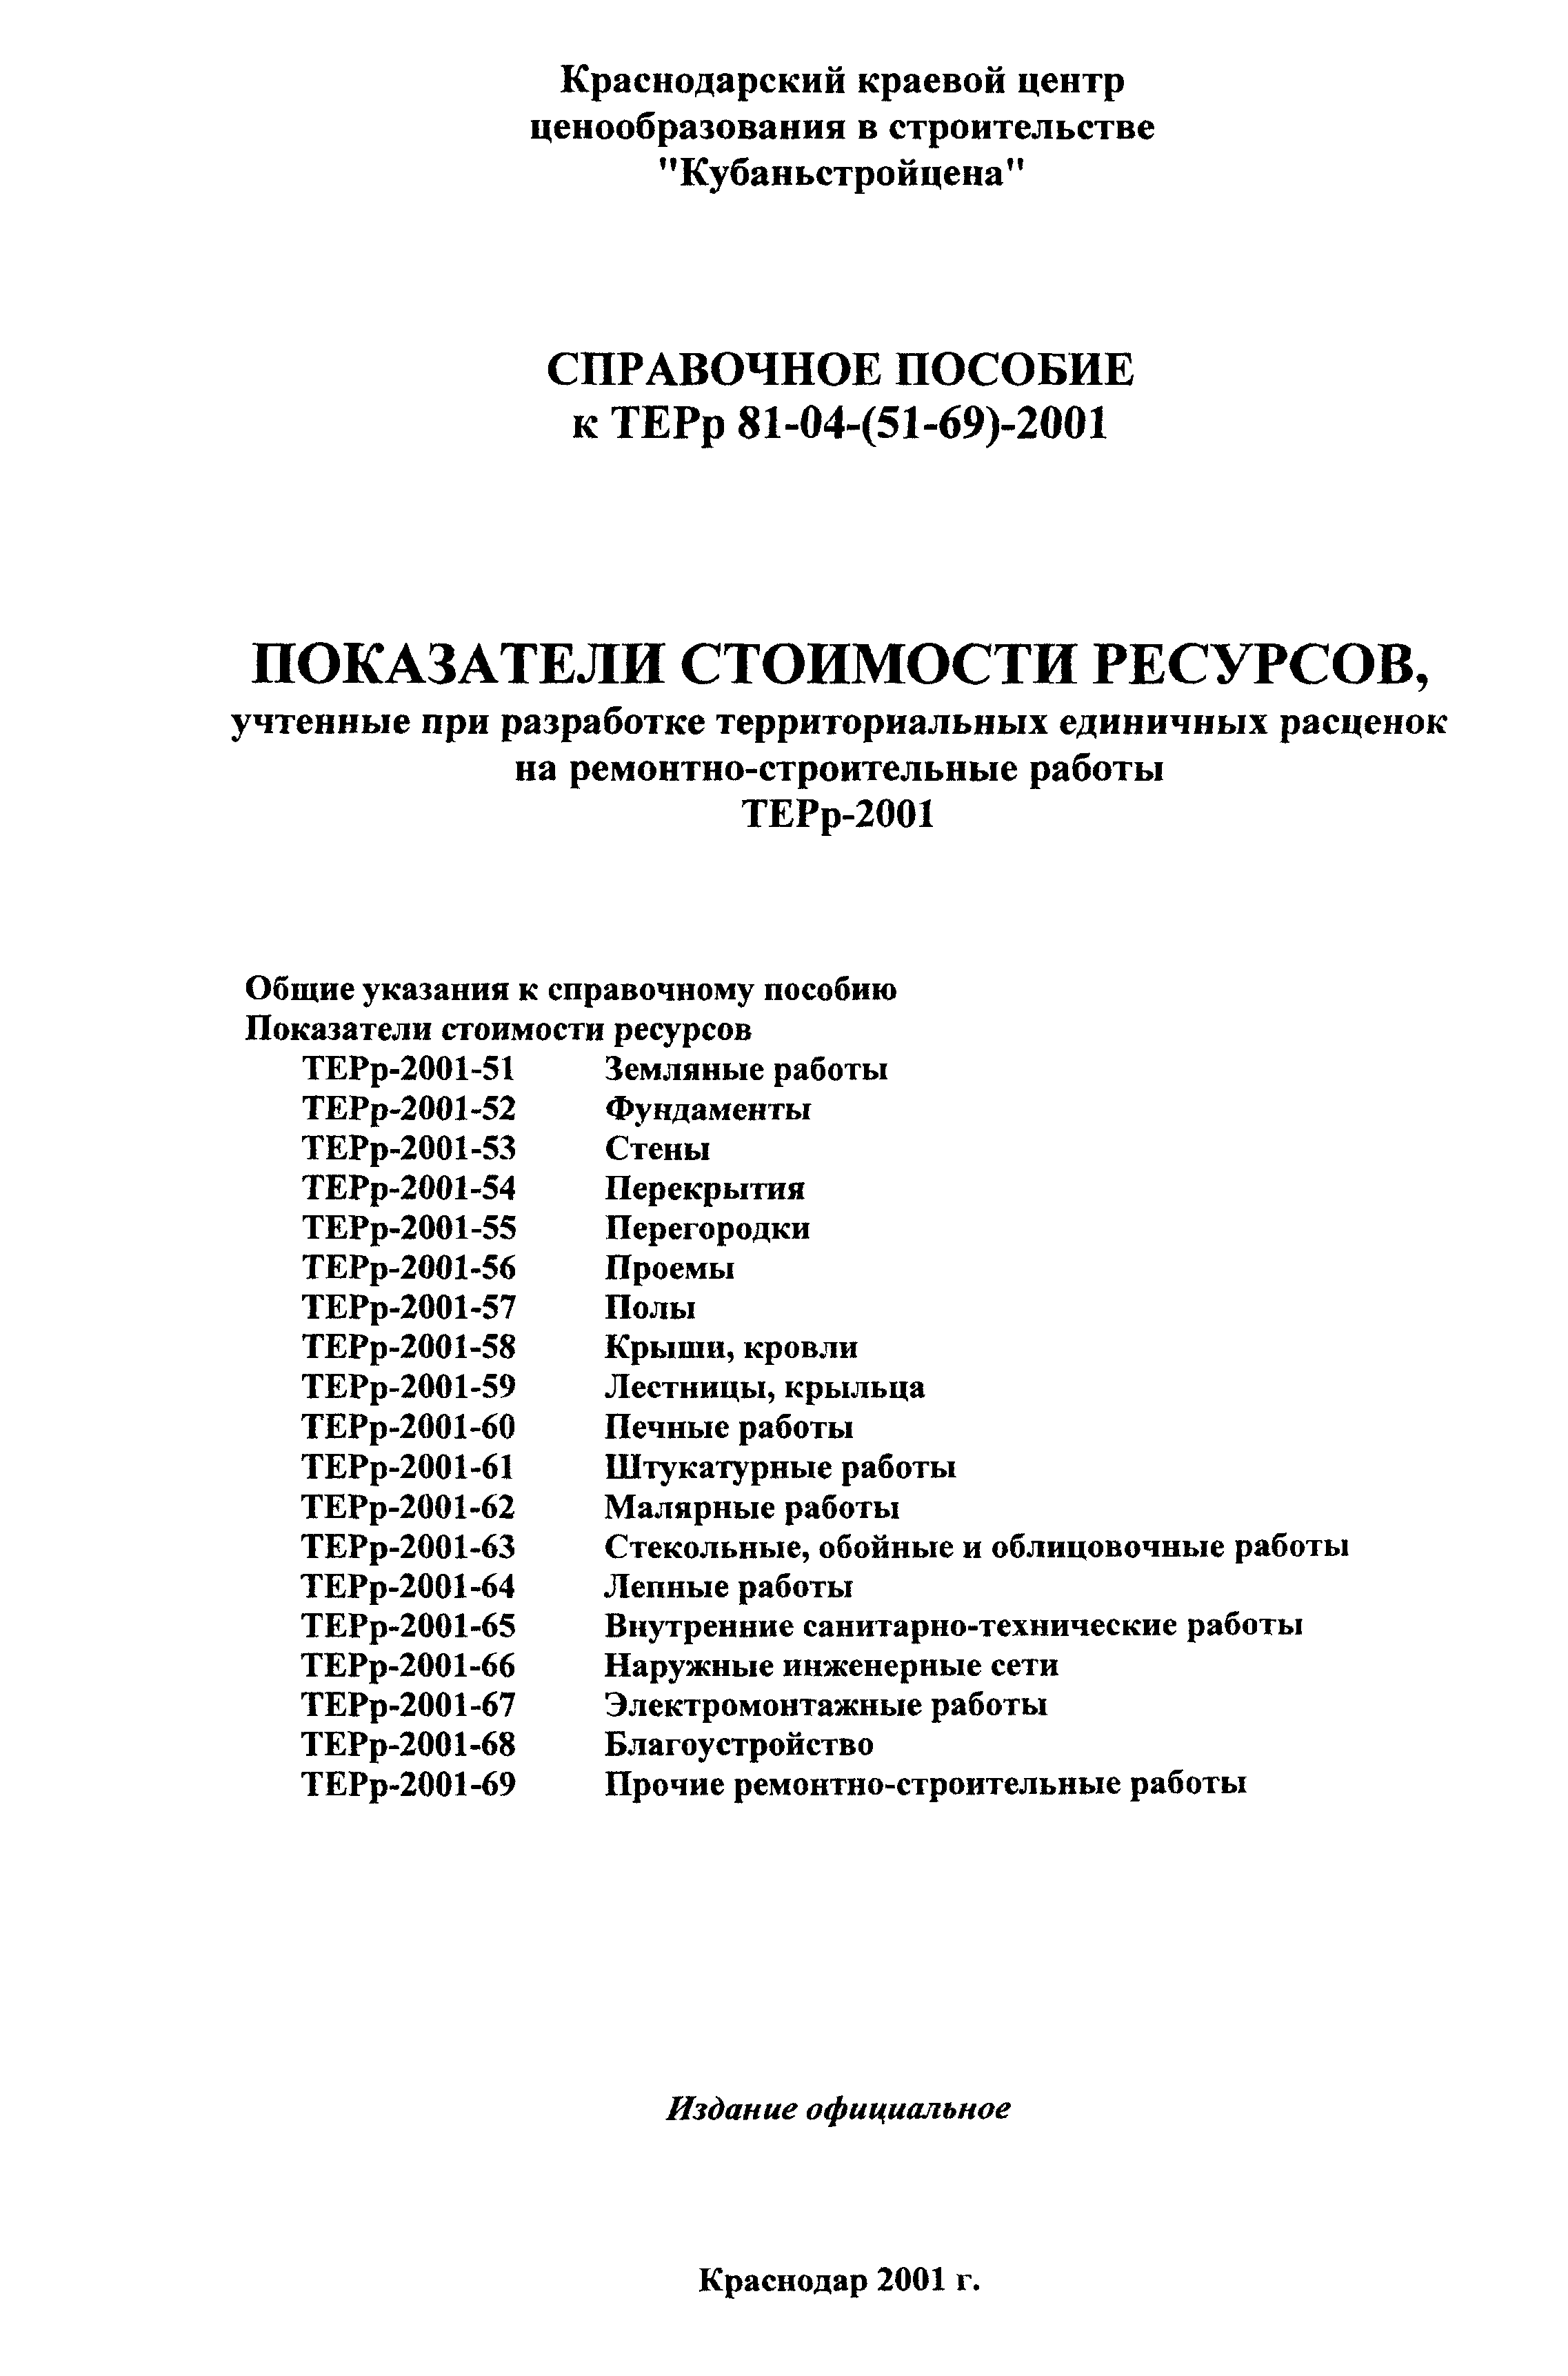 Справочное пособие к ТЕРр 81-04-64-2001